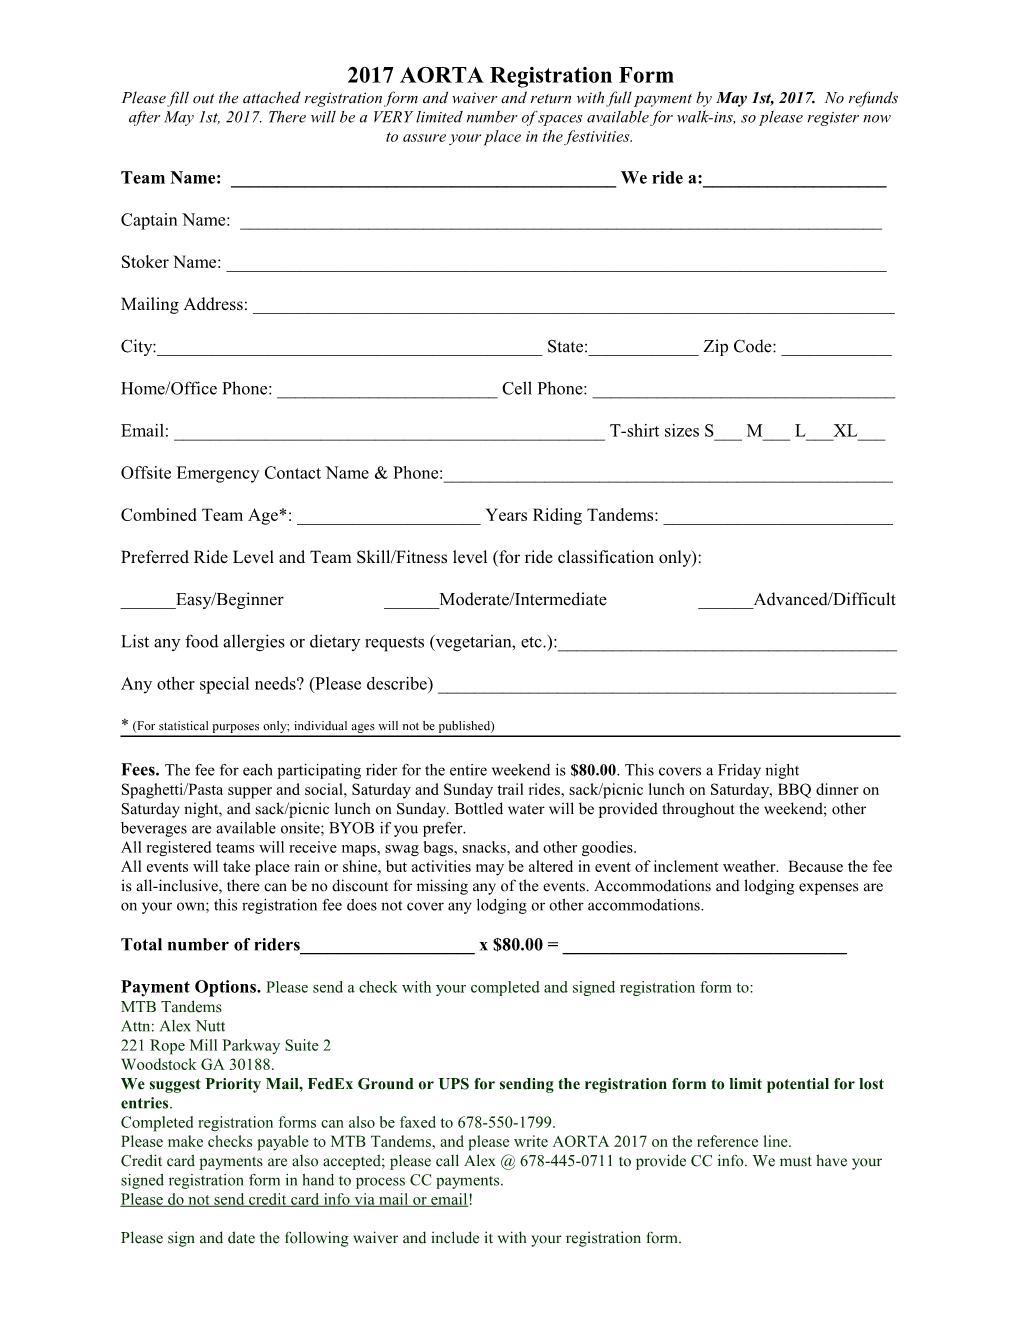 2010 AORTA Registration Form